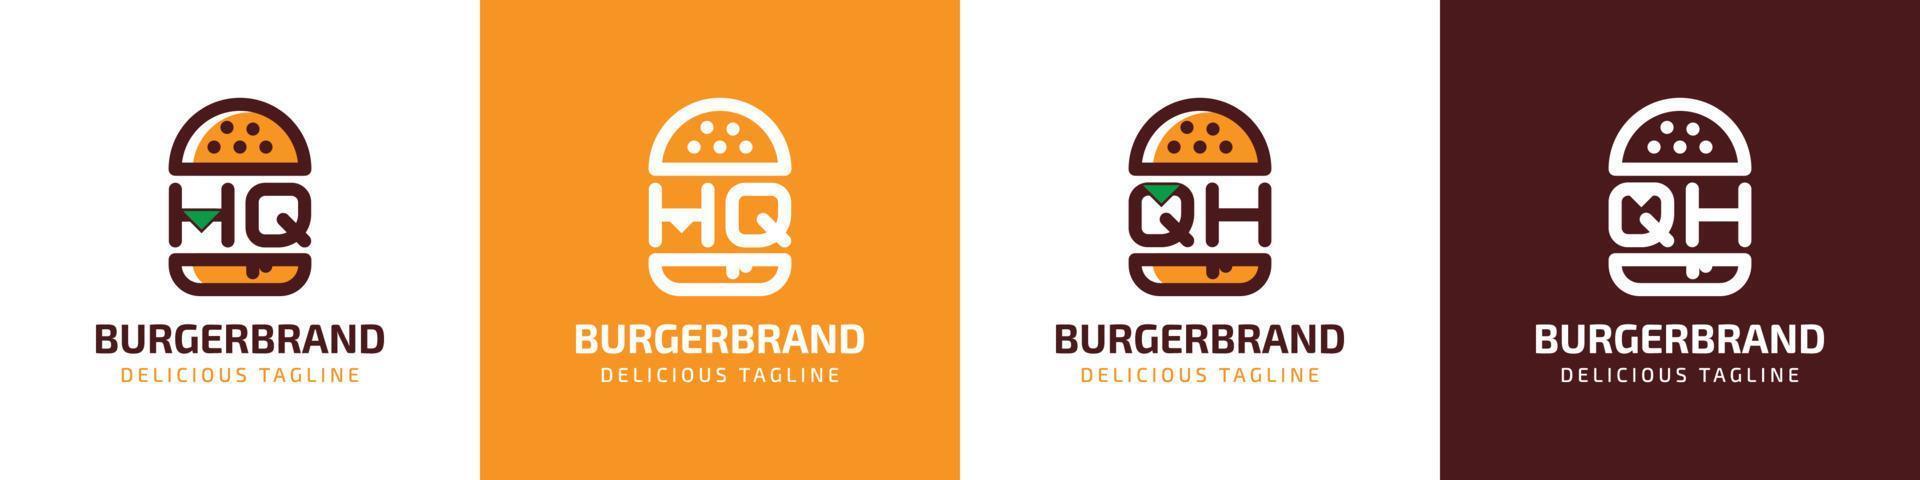 lettera hq e qh hamburger logo, adatto per qualunque attività commerciale relazionato per hamburger con hq o qh iniziali. vettore